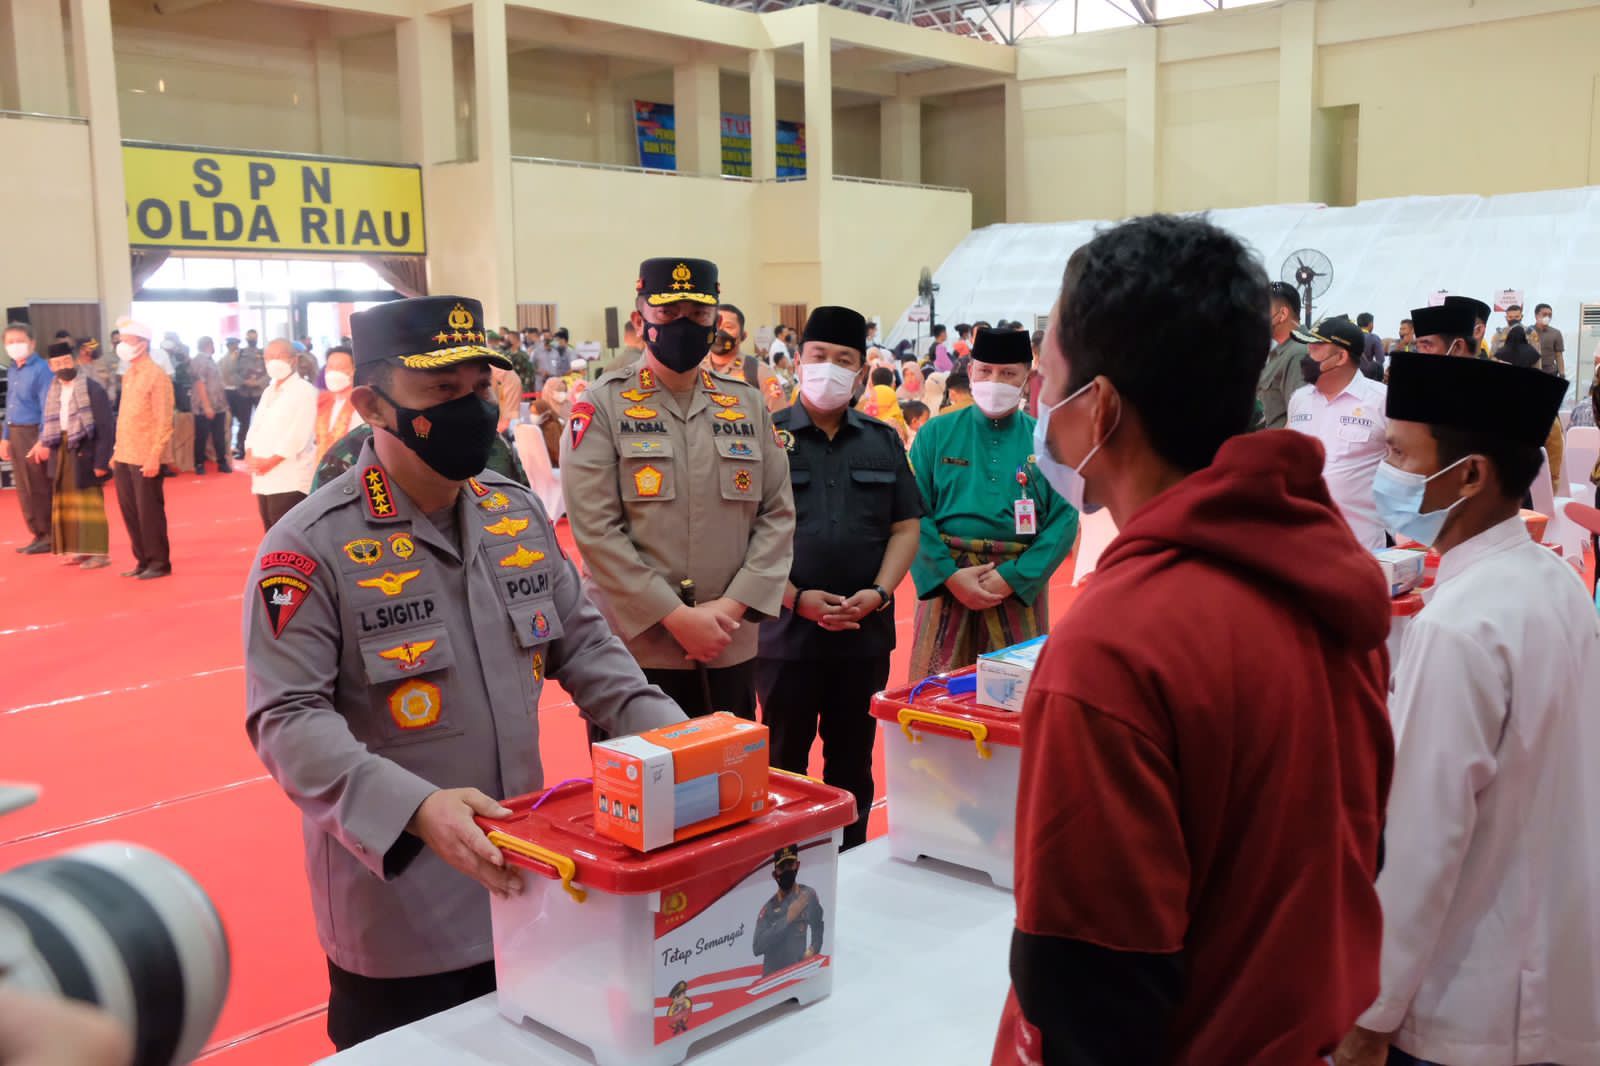 Tinjau Vaksinasi Massal di SPN Polda Riau, Kapolri: Diperlukan Sinergitas Seluruh Stakeholder Untuk Pengendalian Covid-19